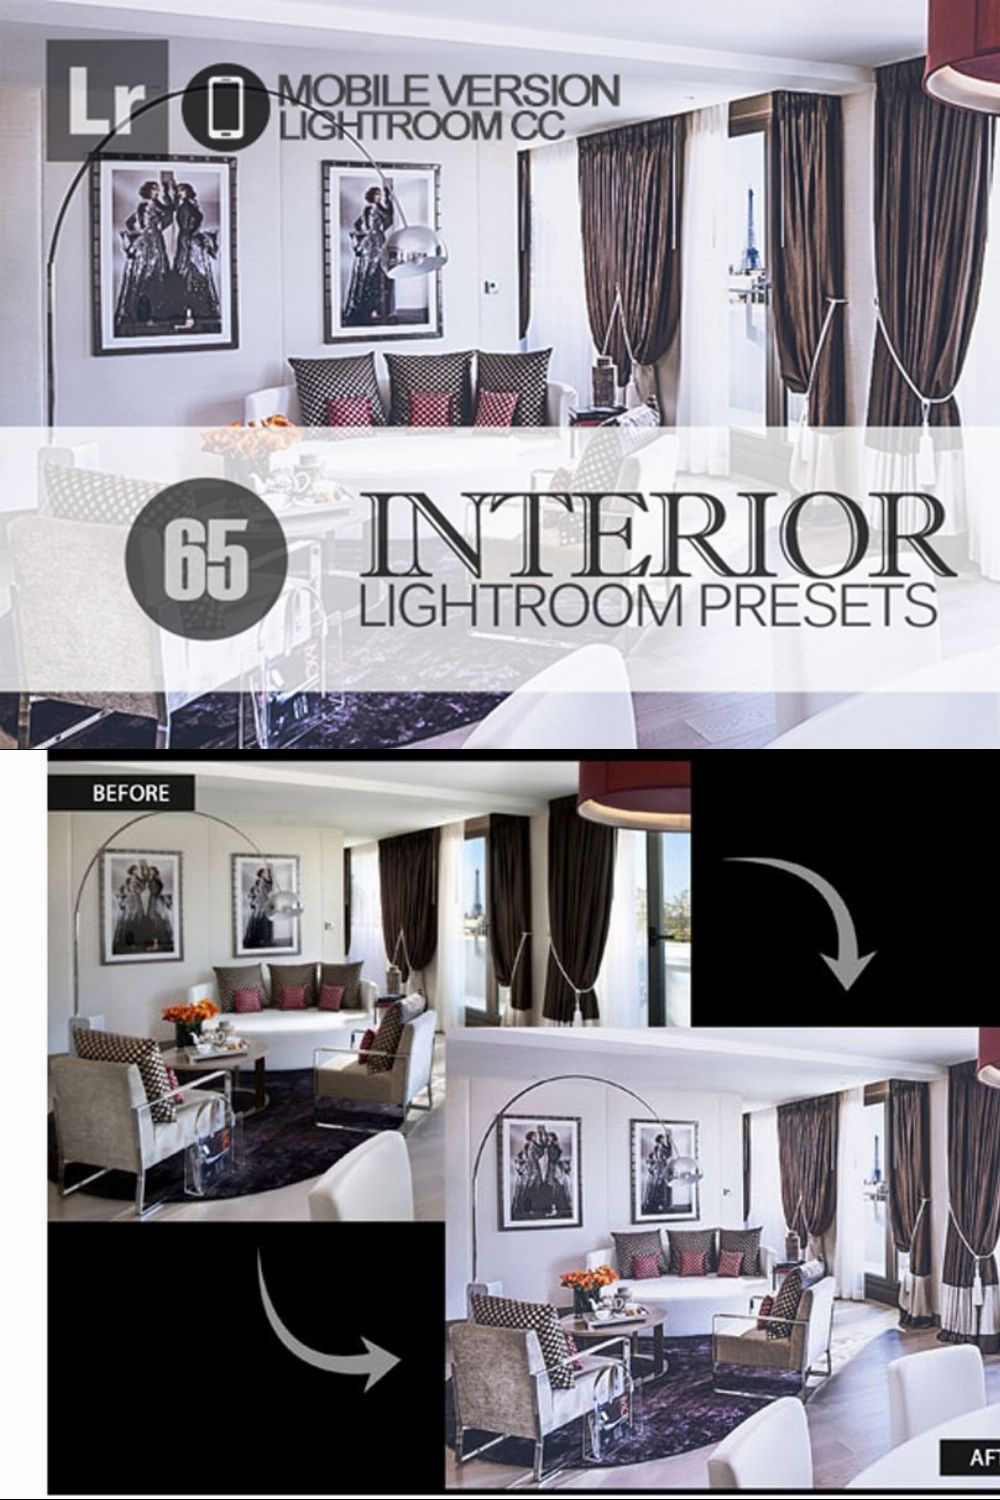 Interior Lightroom Mobile Presets pinterest preview image.